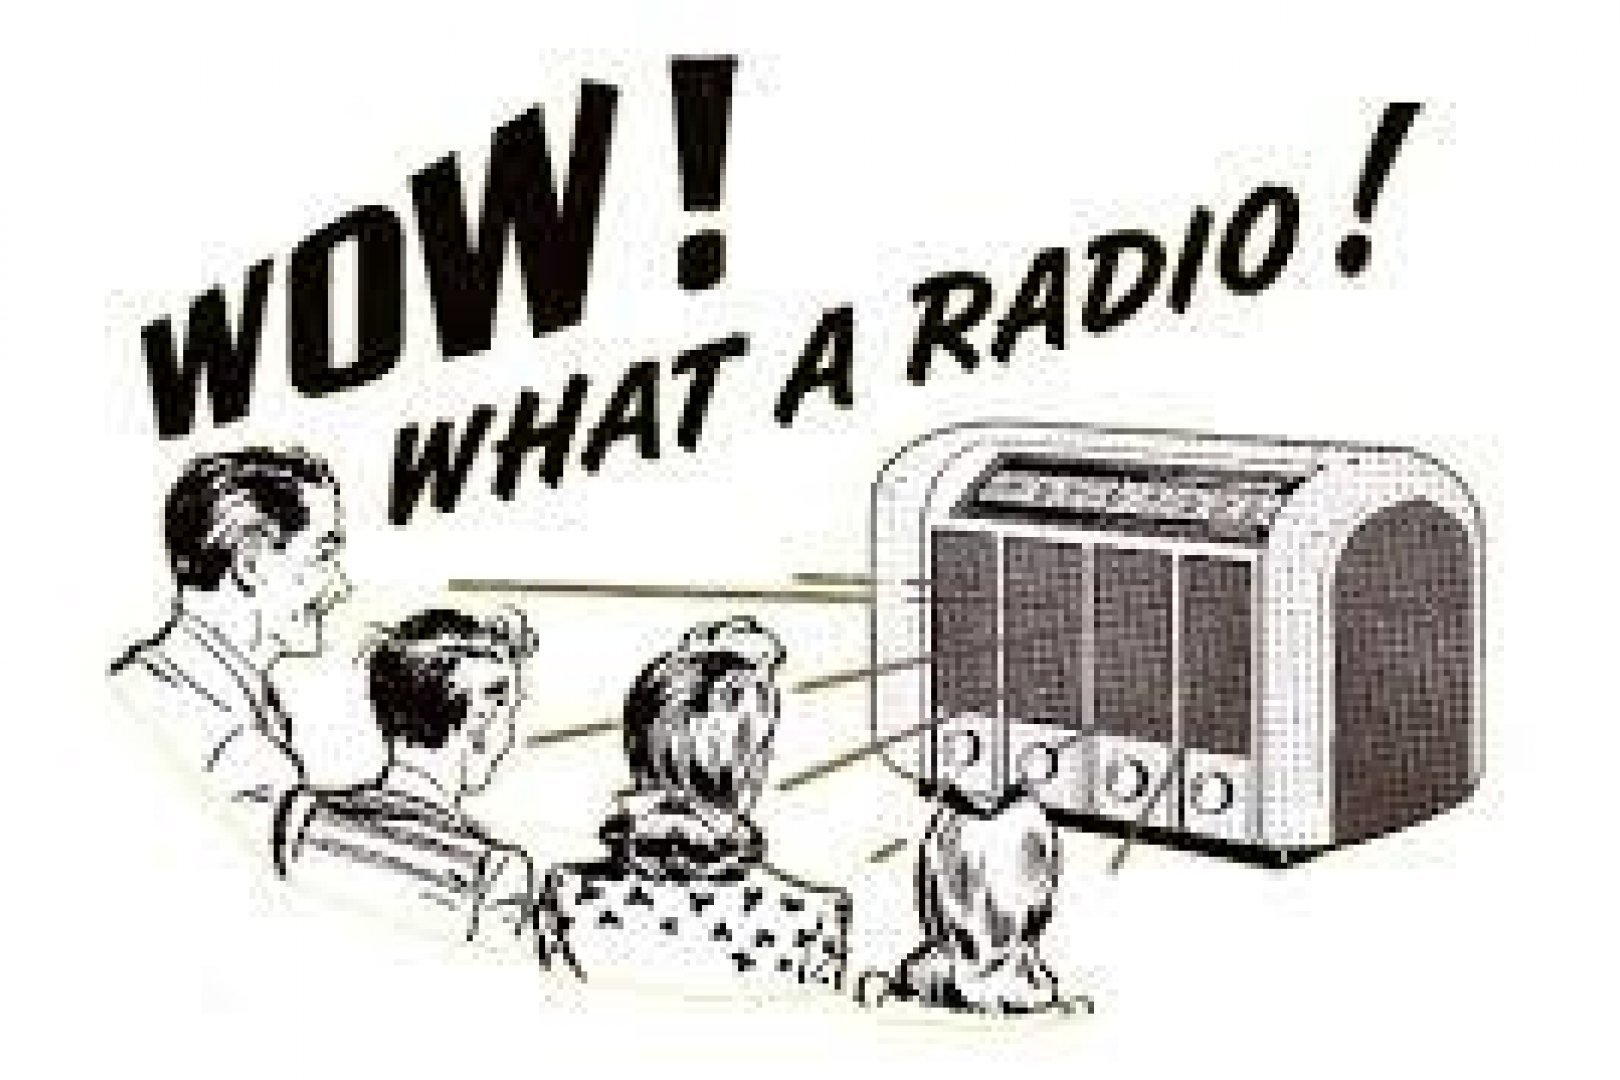 Бесплатное радио без реклам и разговоров